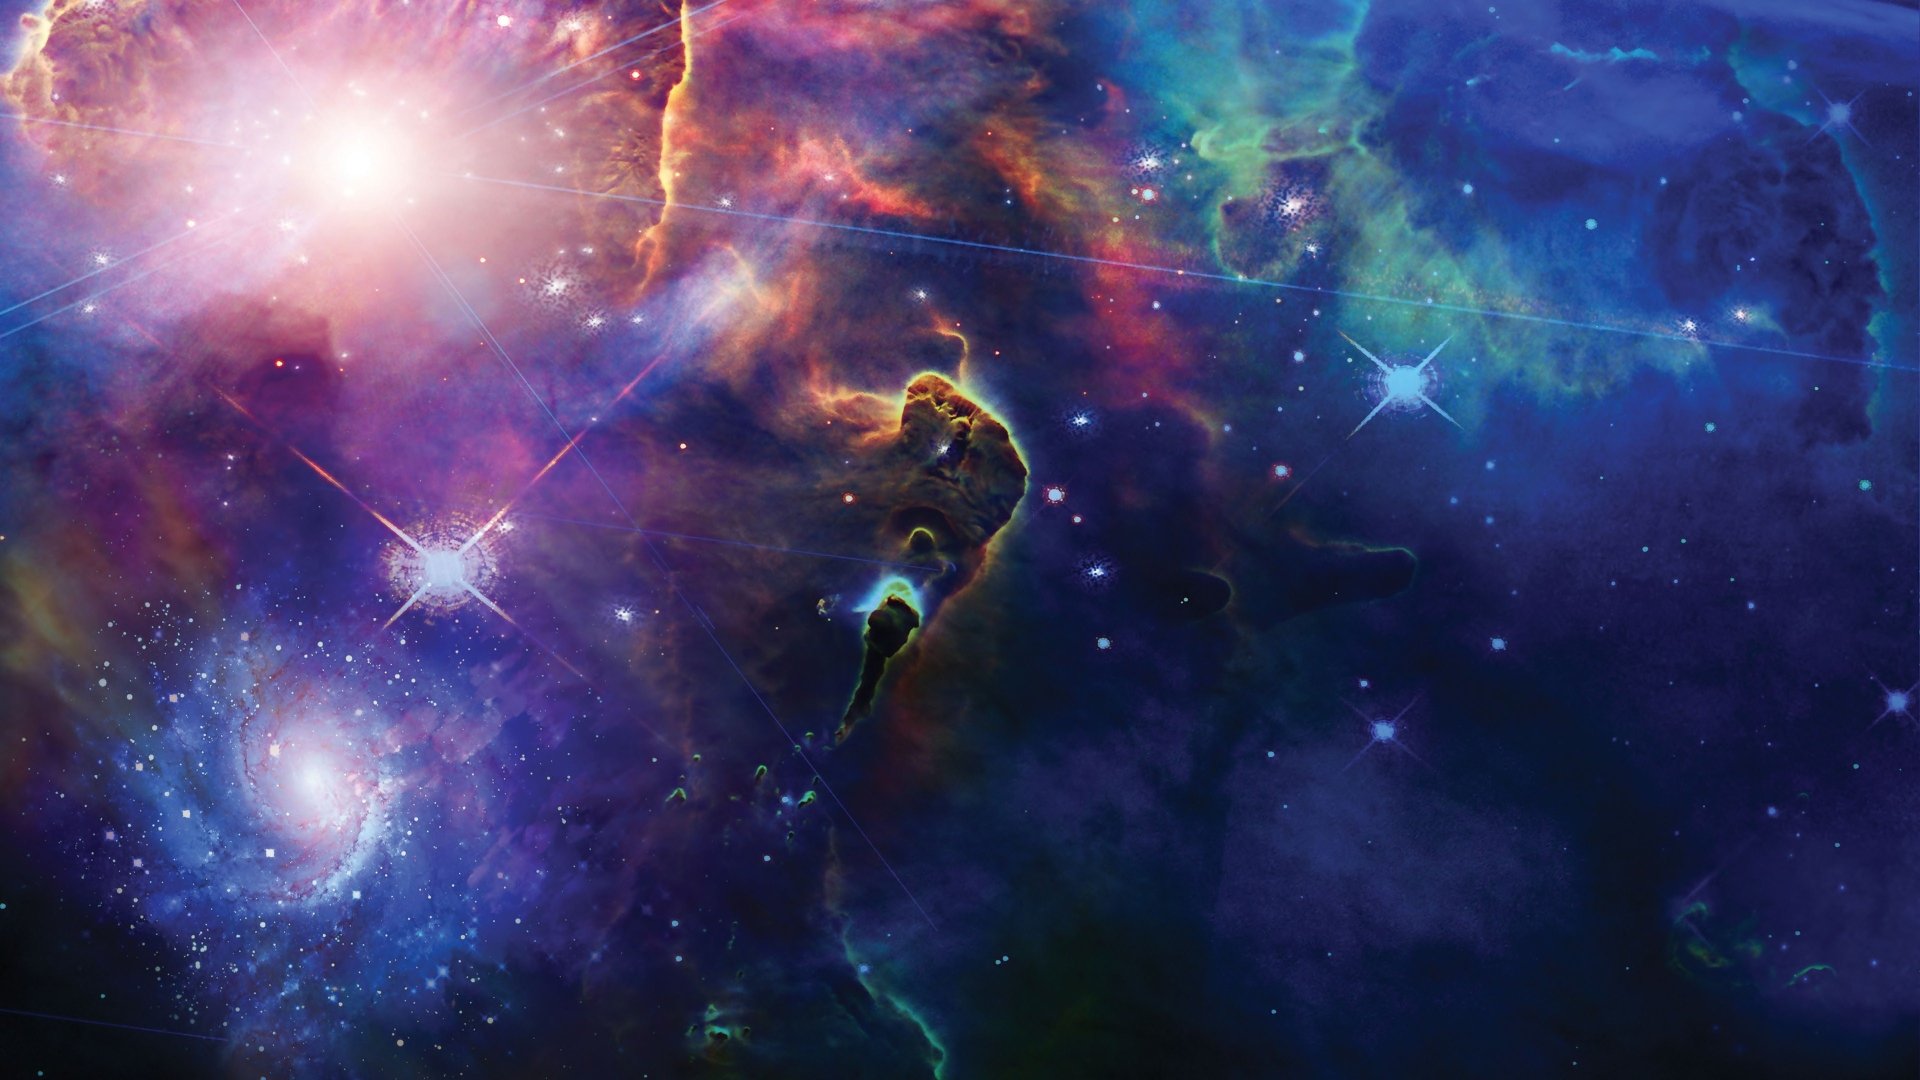 HD Nebula Wallpaper